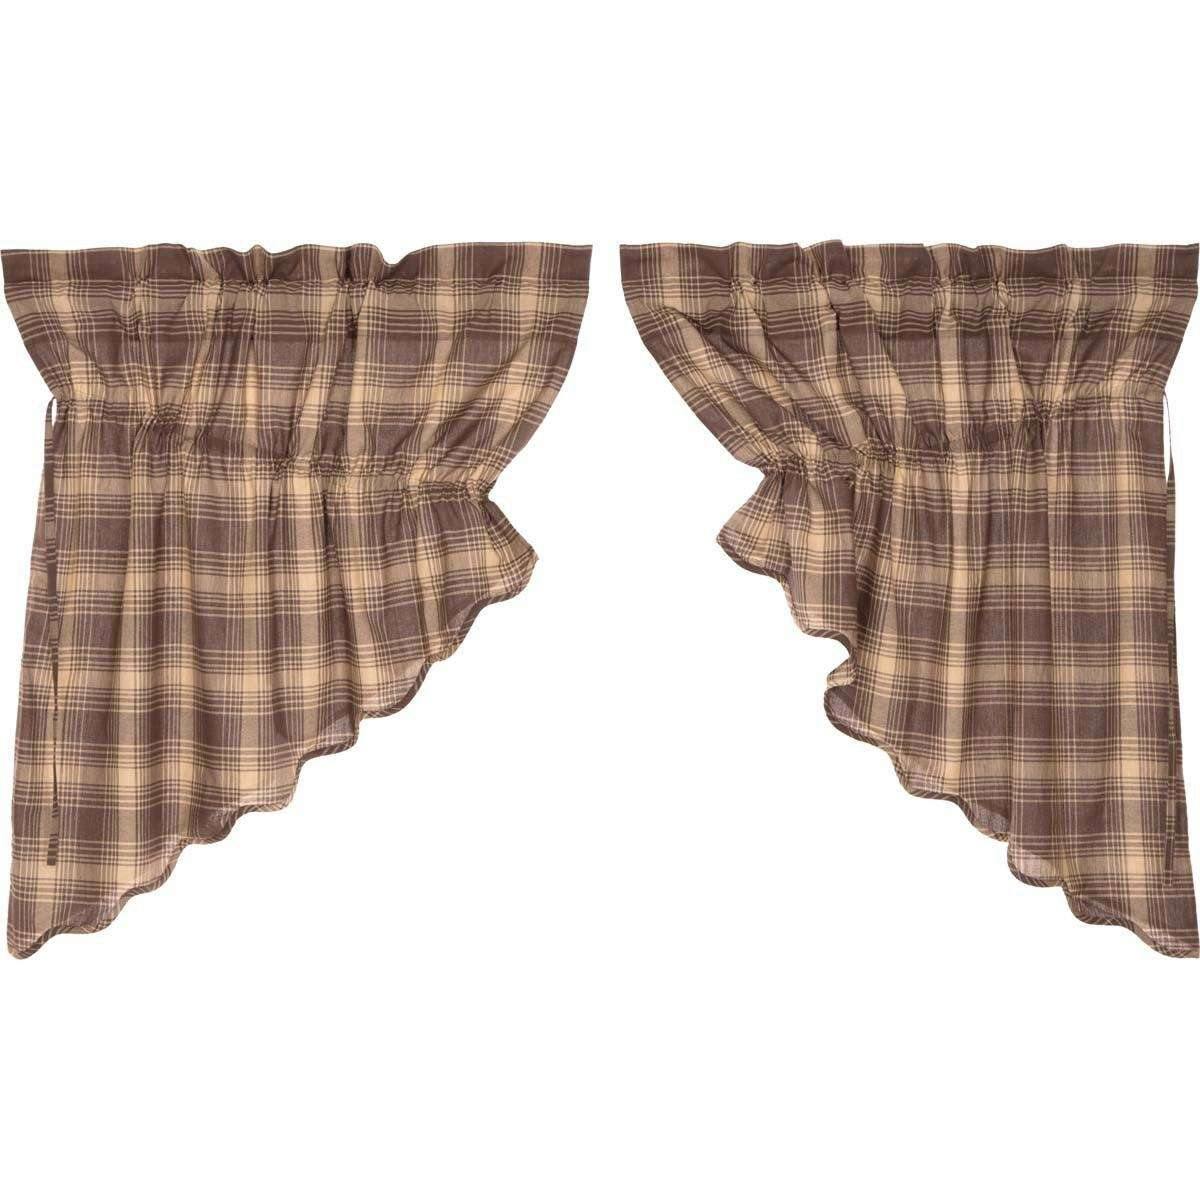 Dawson Star Scalloped Prairie Swag Curtain Set of 2 36x36x18 VHC Brands online